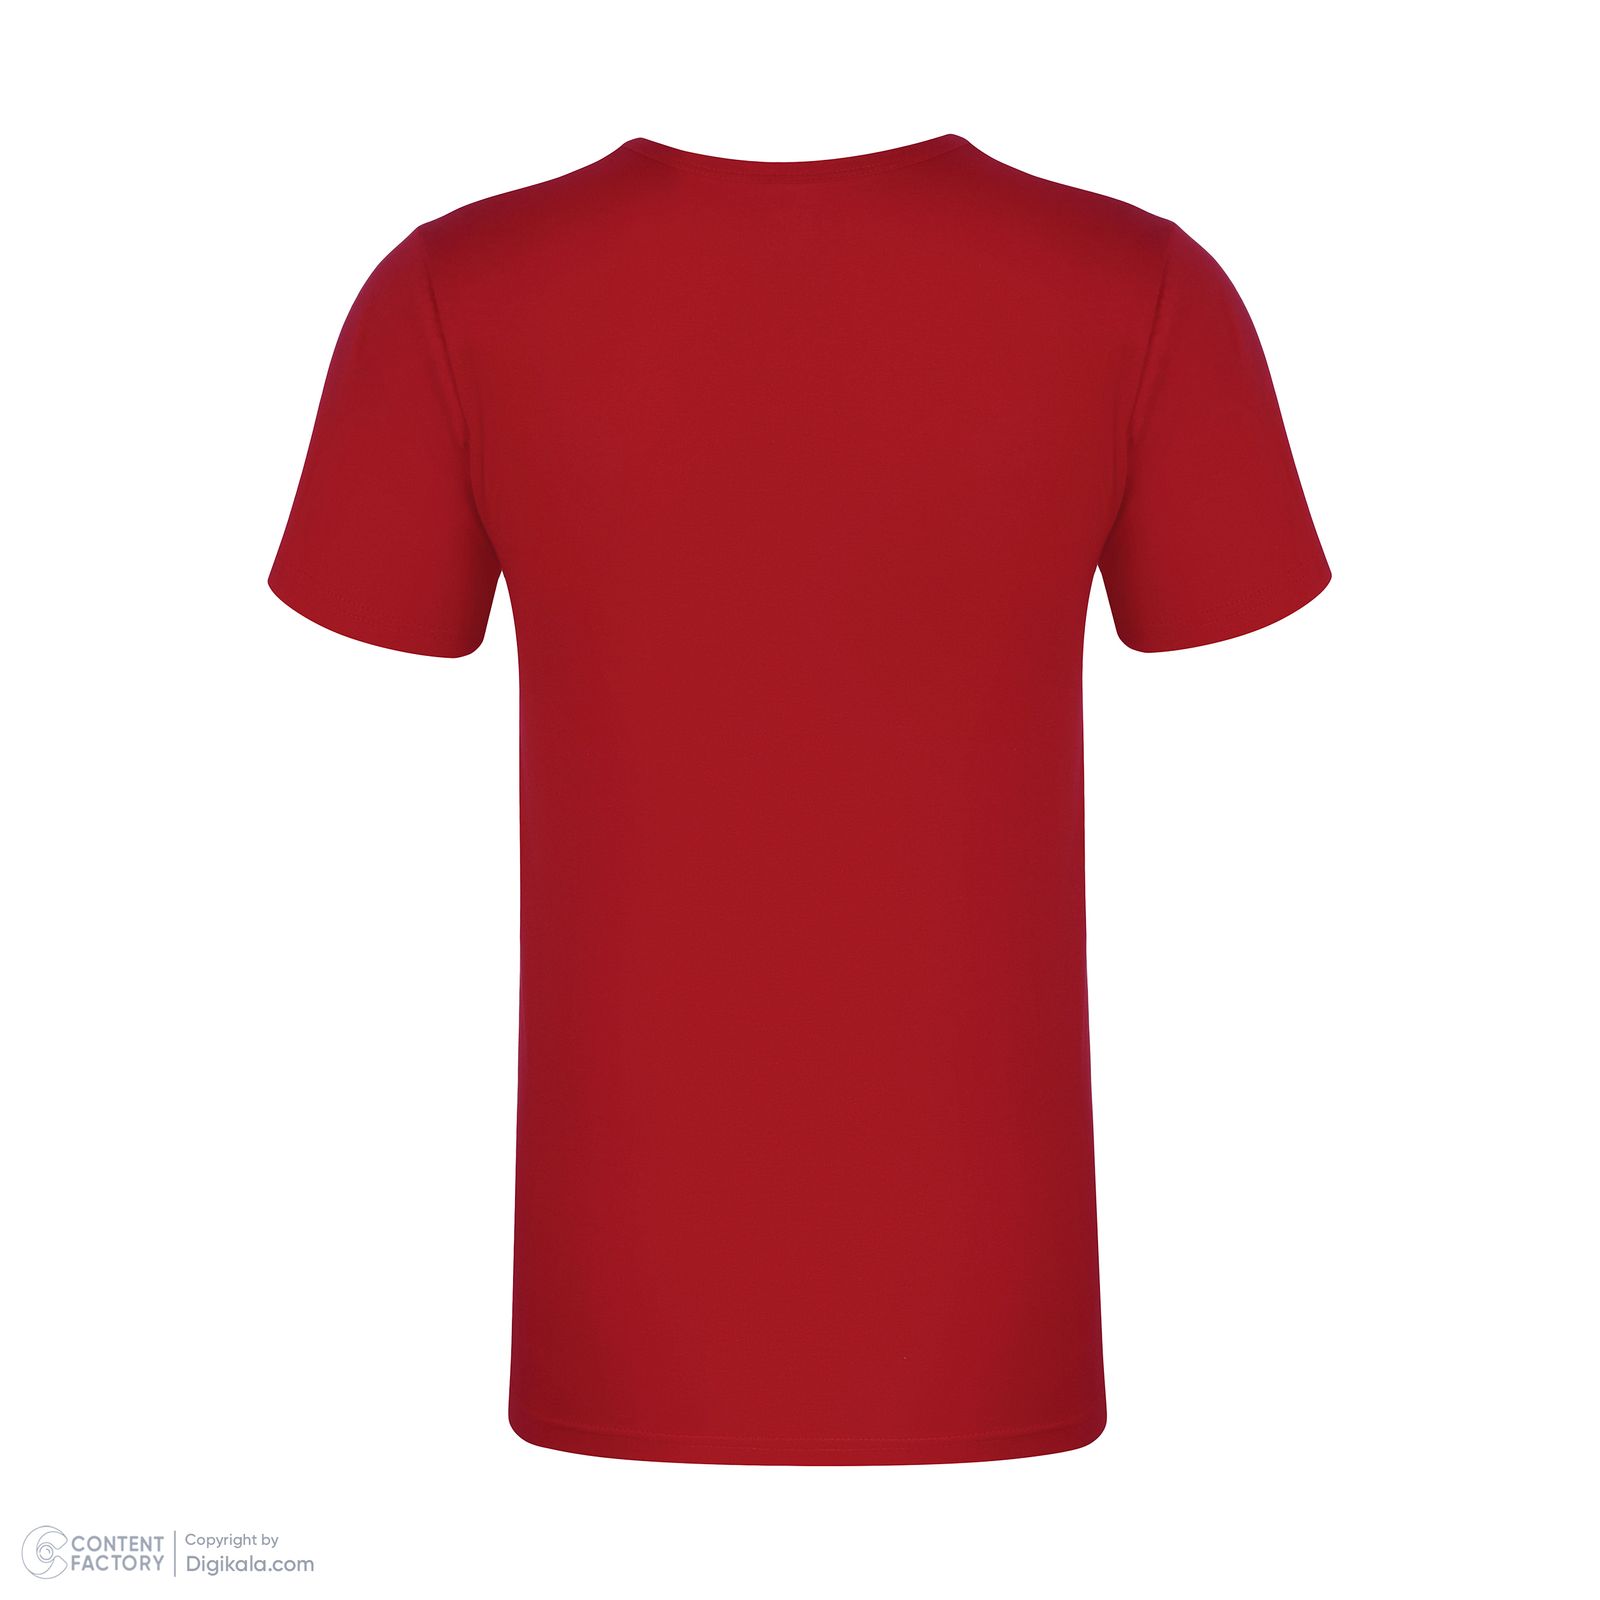 زیرپوش آستین دار مردانه برهان تن پوش مدل 2-02 رنگ قرمز بسته 8 عددی -  - 4